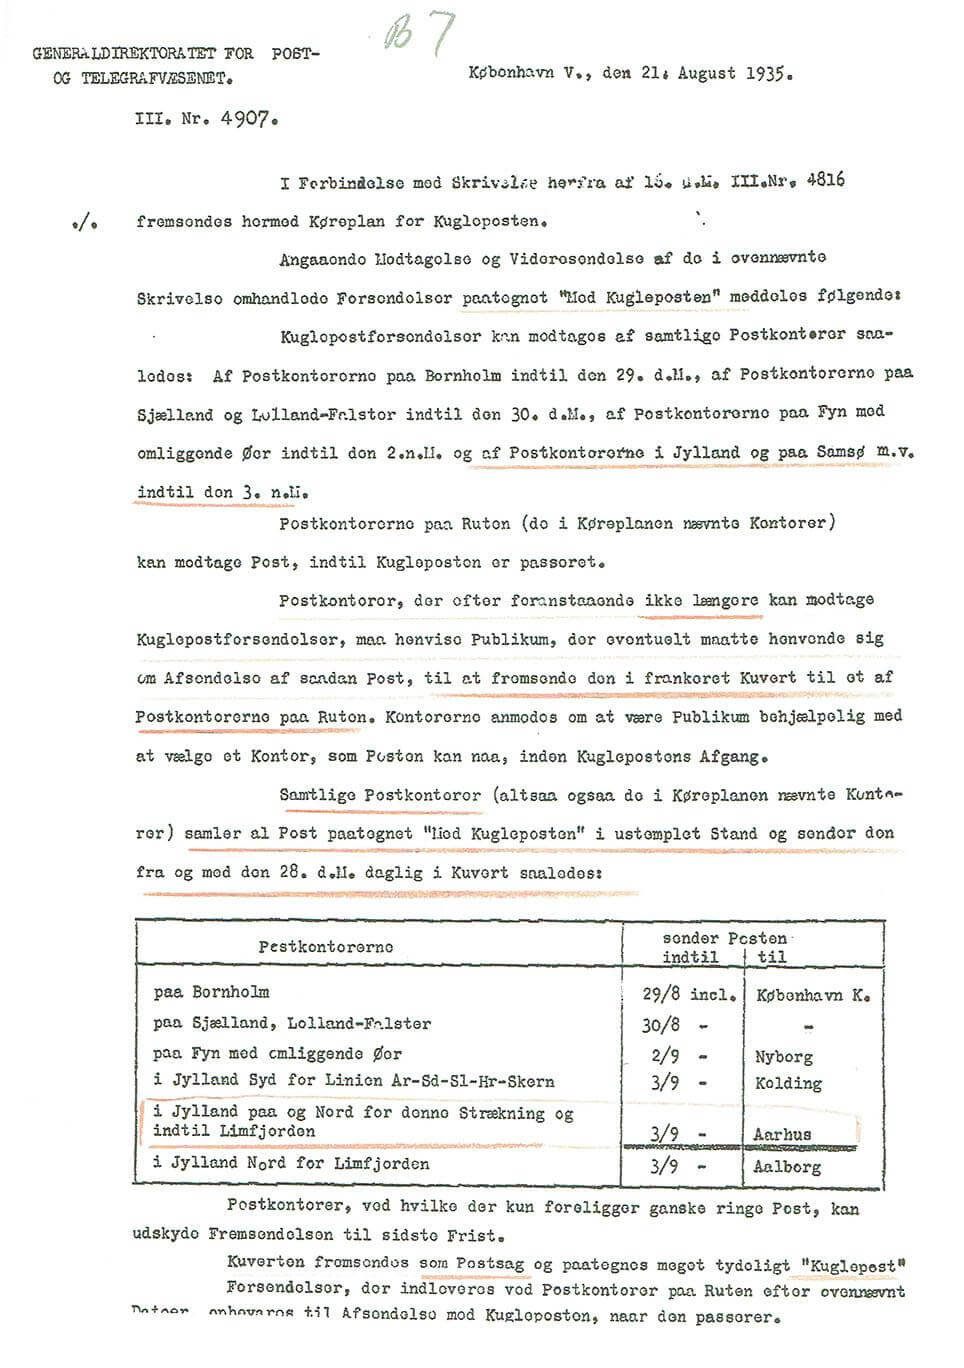 Skrivelse fra Generaldirektoratet for Post- og Telegrafvæsenet, 21. august 1935.